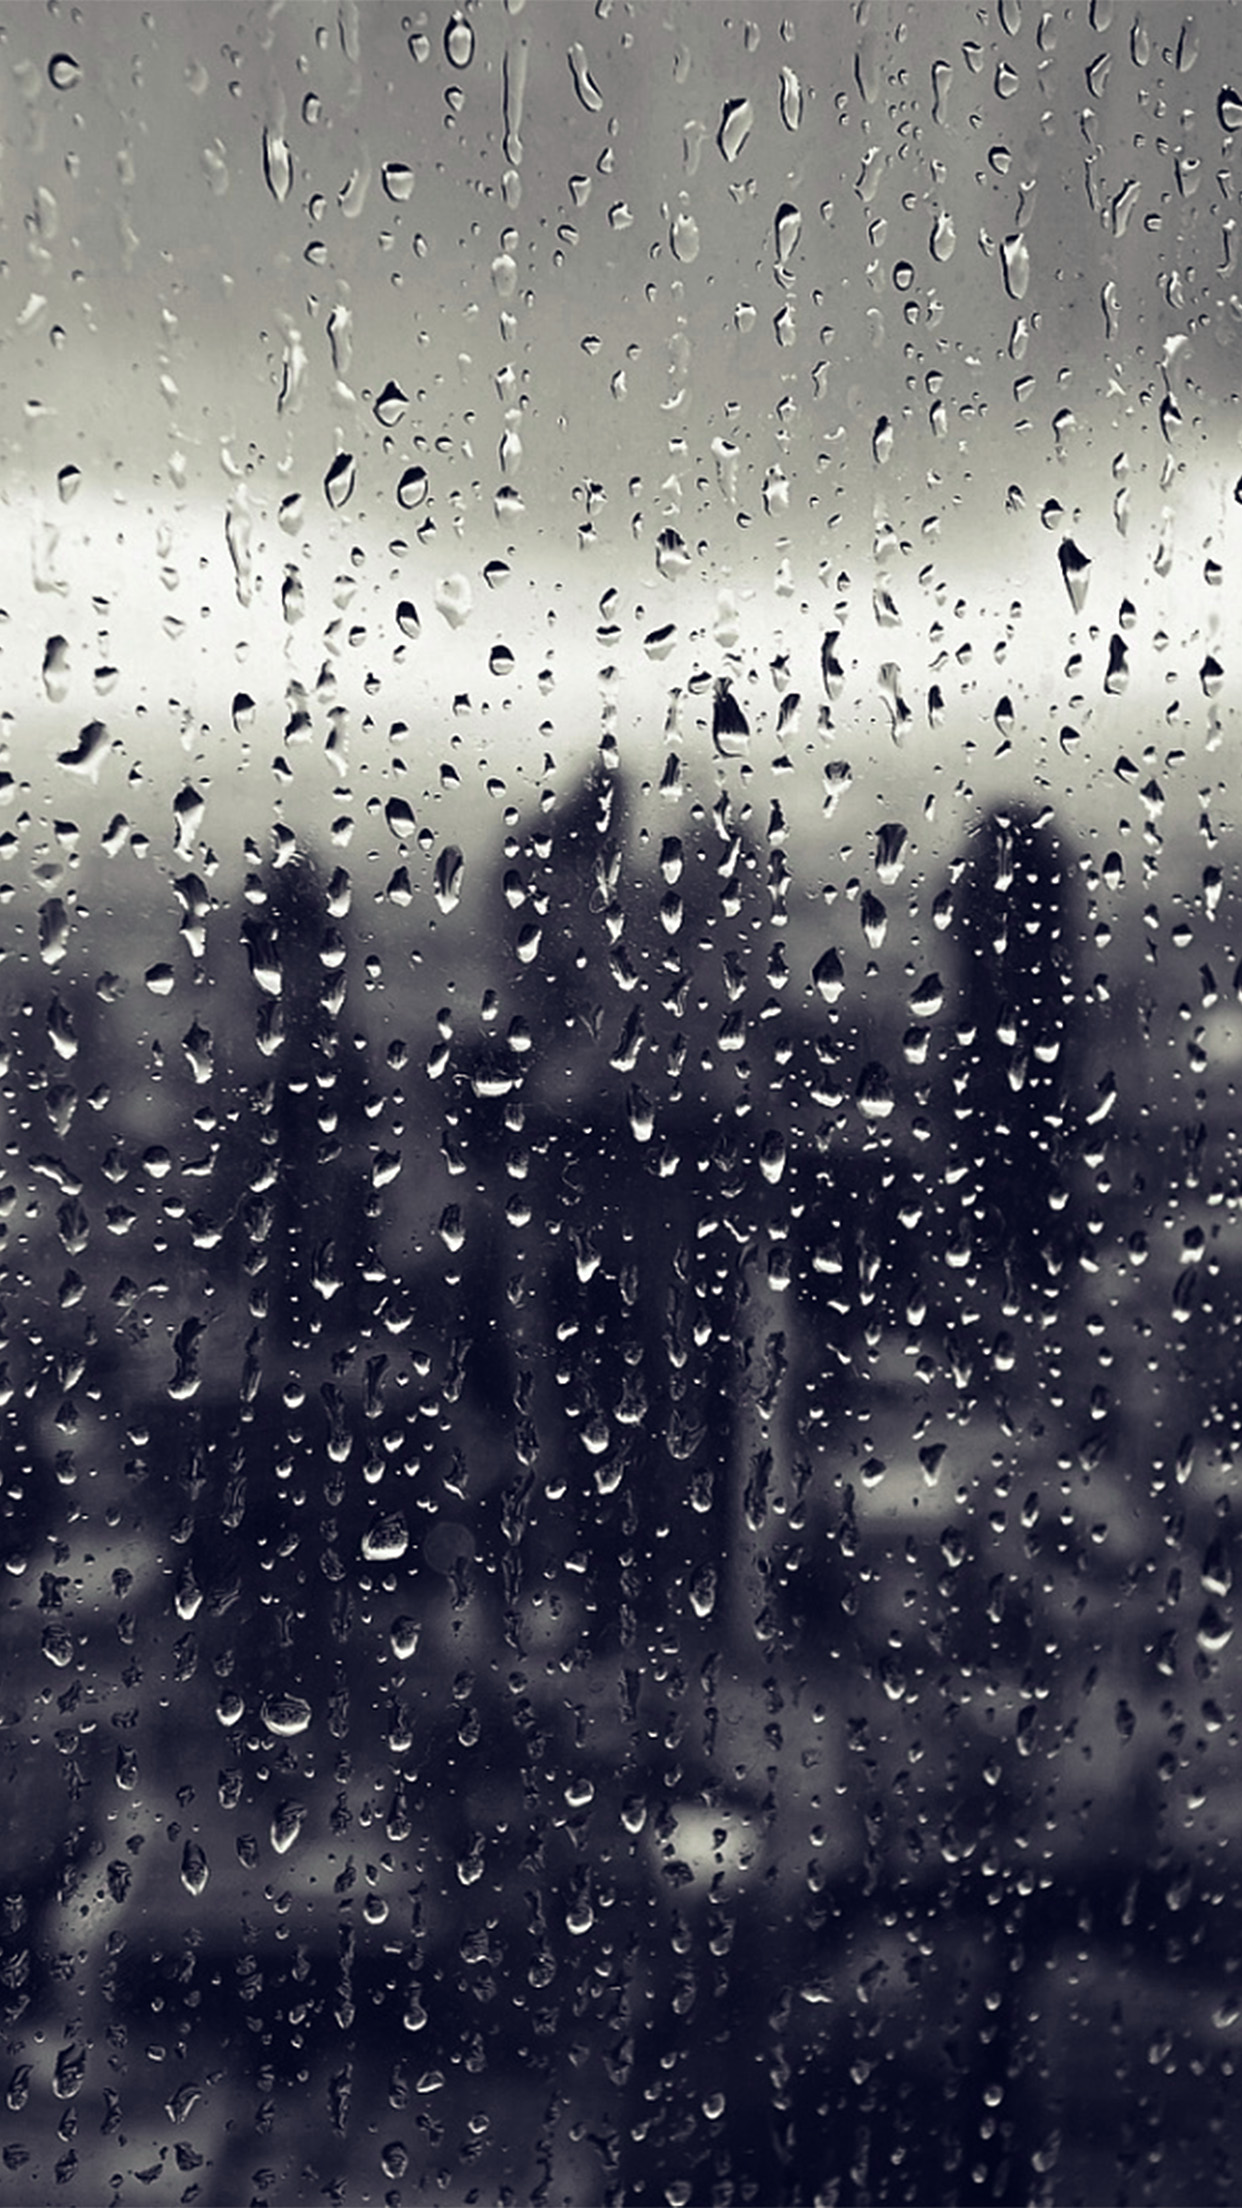 雨壁紙iphone,水,雨,霧雨,落とす,空